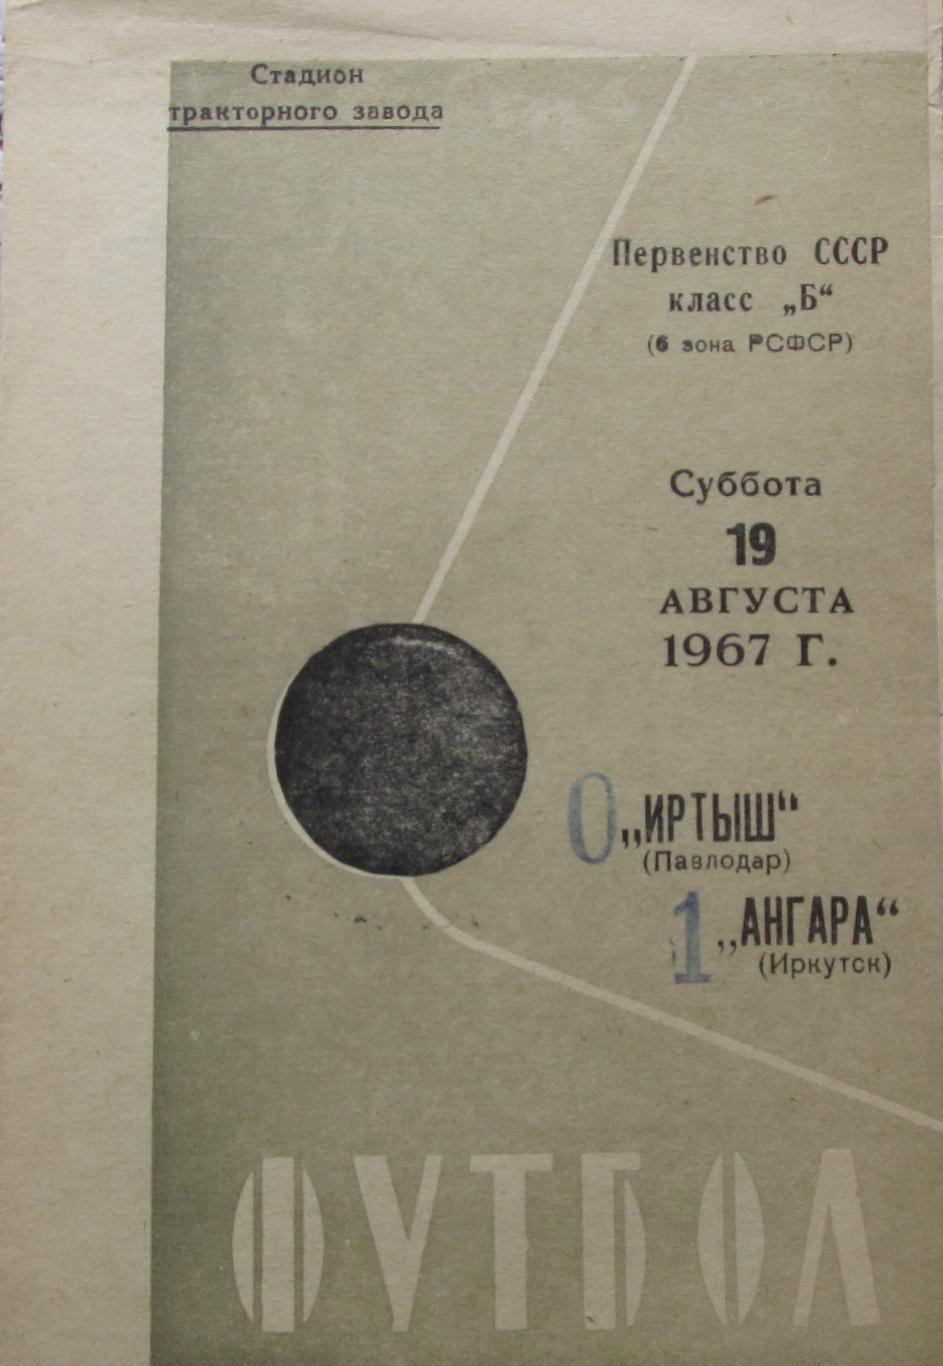 Иртыш Павлодар Ангара Иркутск 19.08.1967